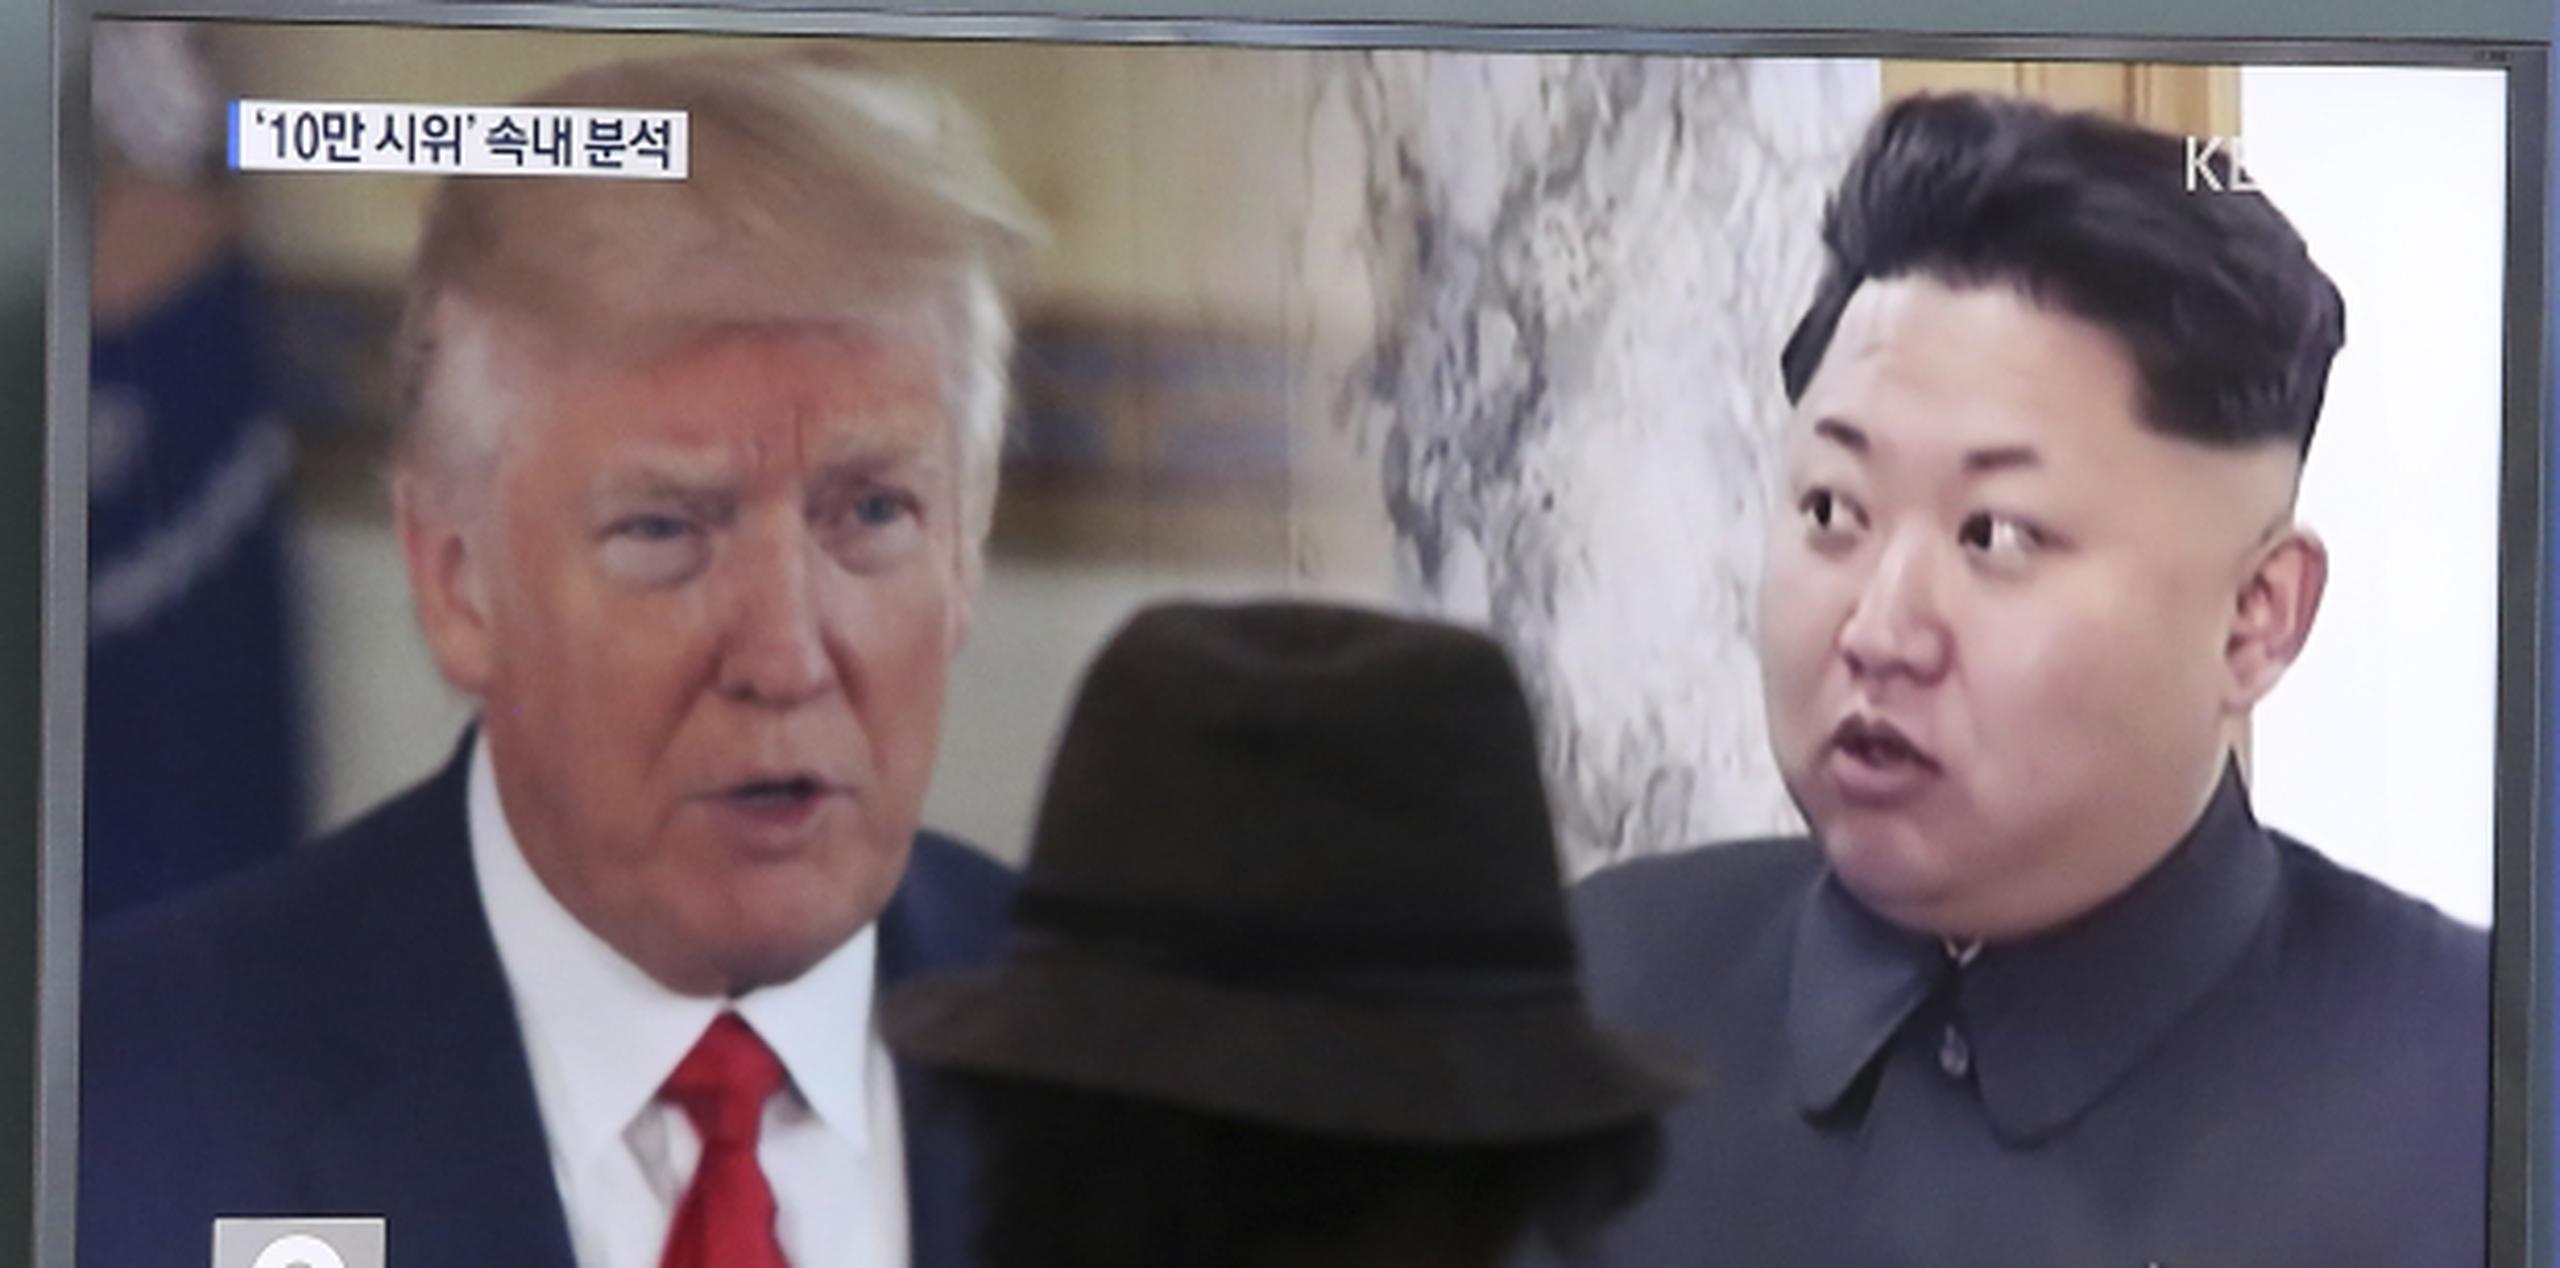 El presidente Donald Trump y el líder de Corea del Norte, Kim Jong Un, en un televisor de la Estación de Tren de Seúl, en Corea del Sur. (AP / Ahn Young-joon)